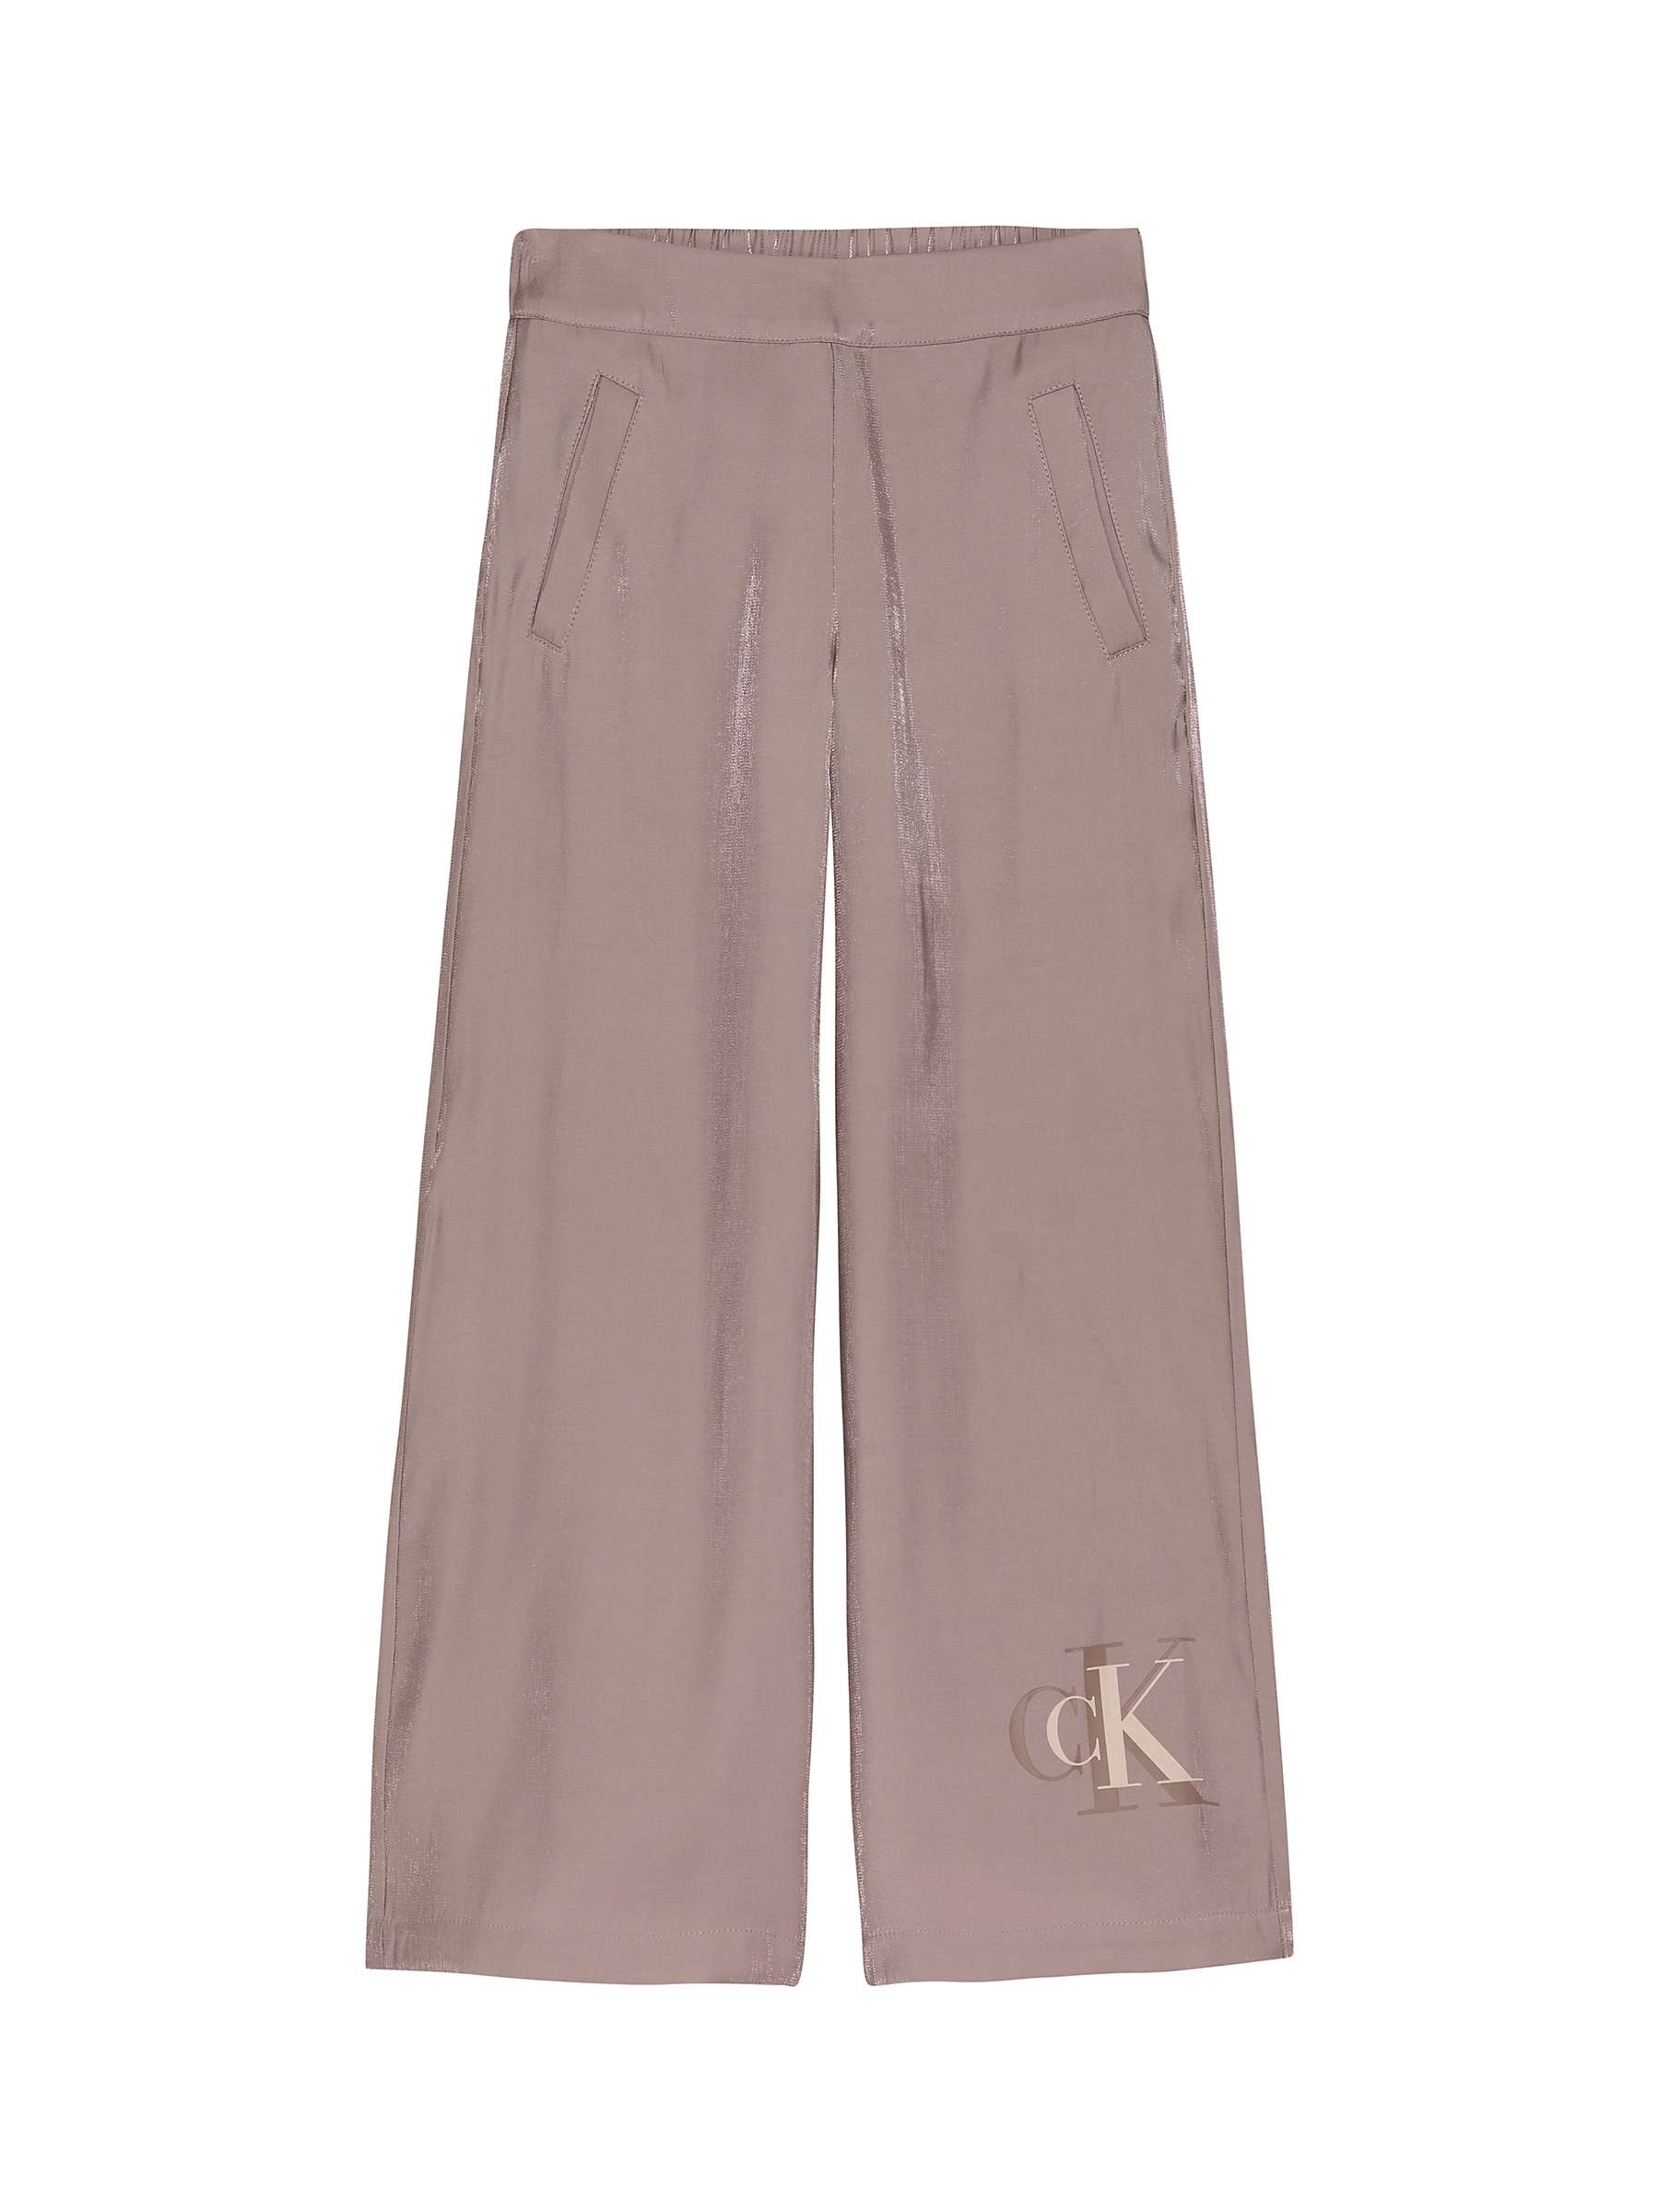 Buy Calvin Klein Kids' Metallic Shine Trousers, Dark Blush Online at johnlewis.com